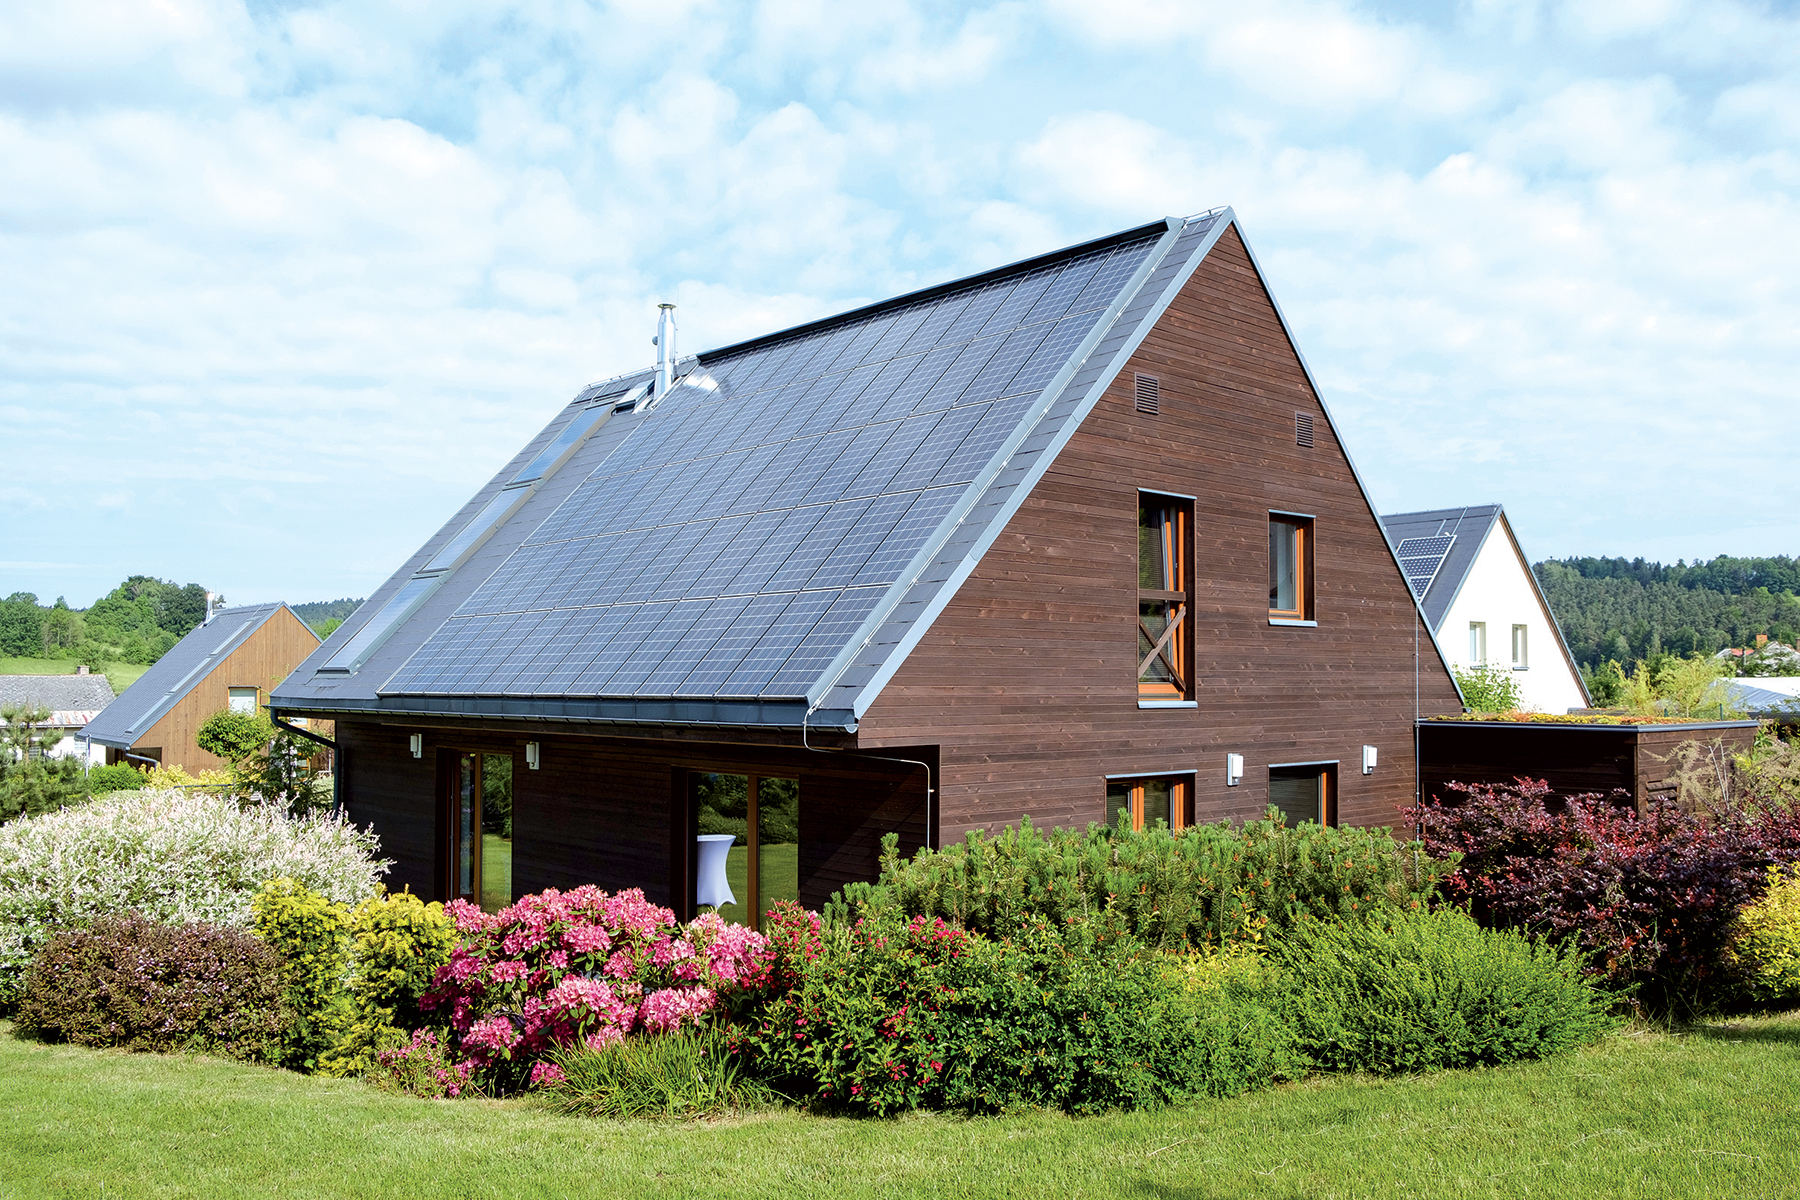 Školiace stredisko je prvá energeticky nulová budova v ČR. Vľavo vidieť solárne termické panely integrované do strešnej krytiny, vpravo fotovoltické panely s výkonom 8,5 kWp.